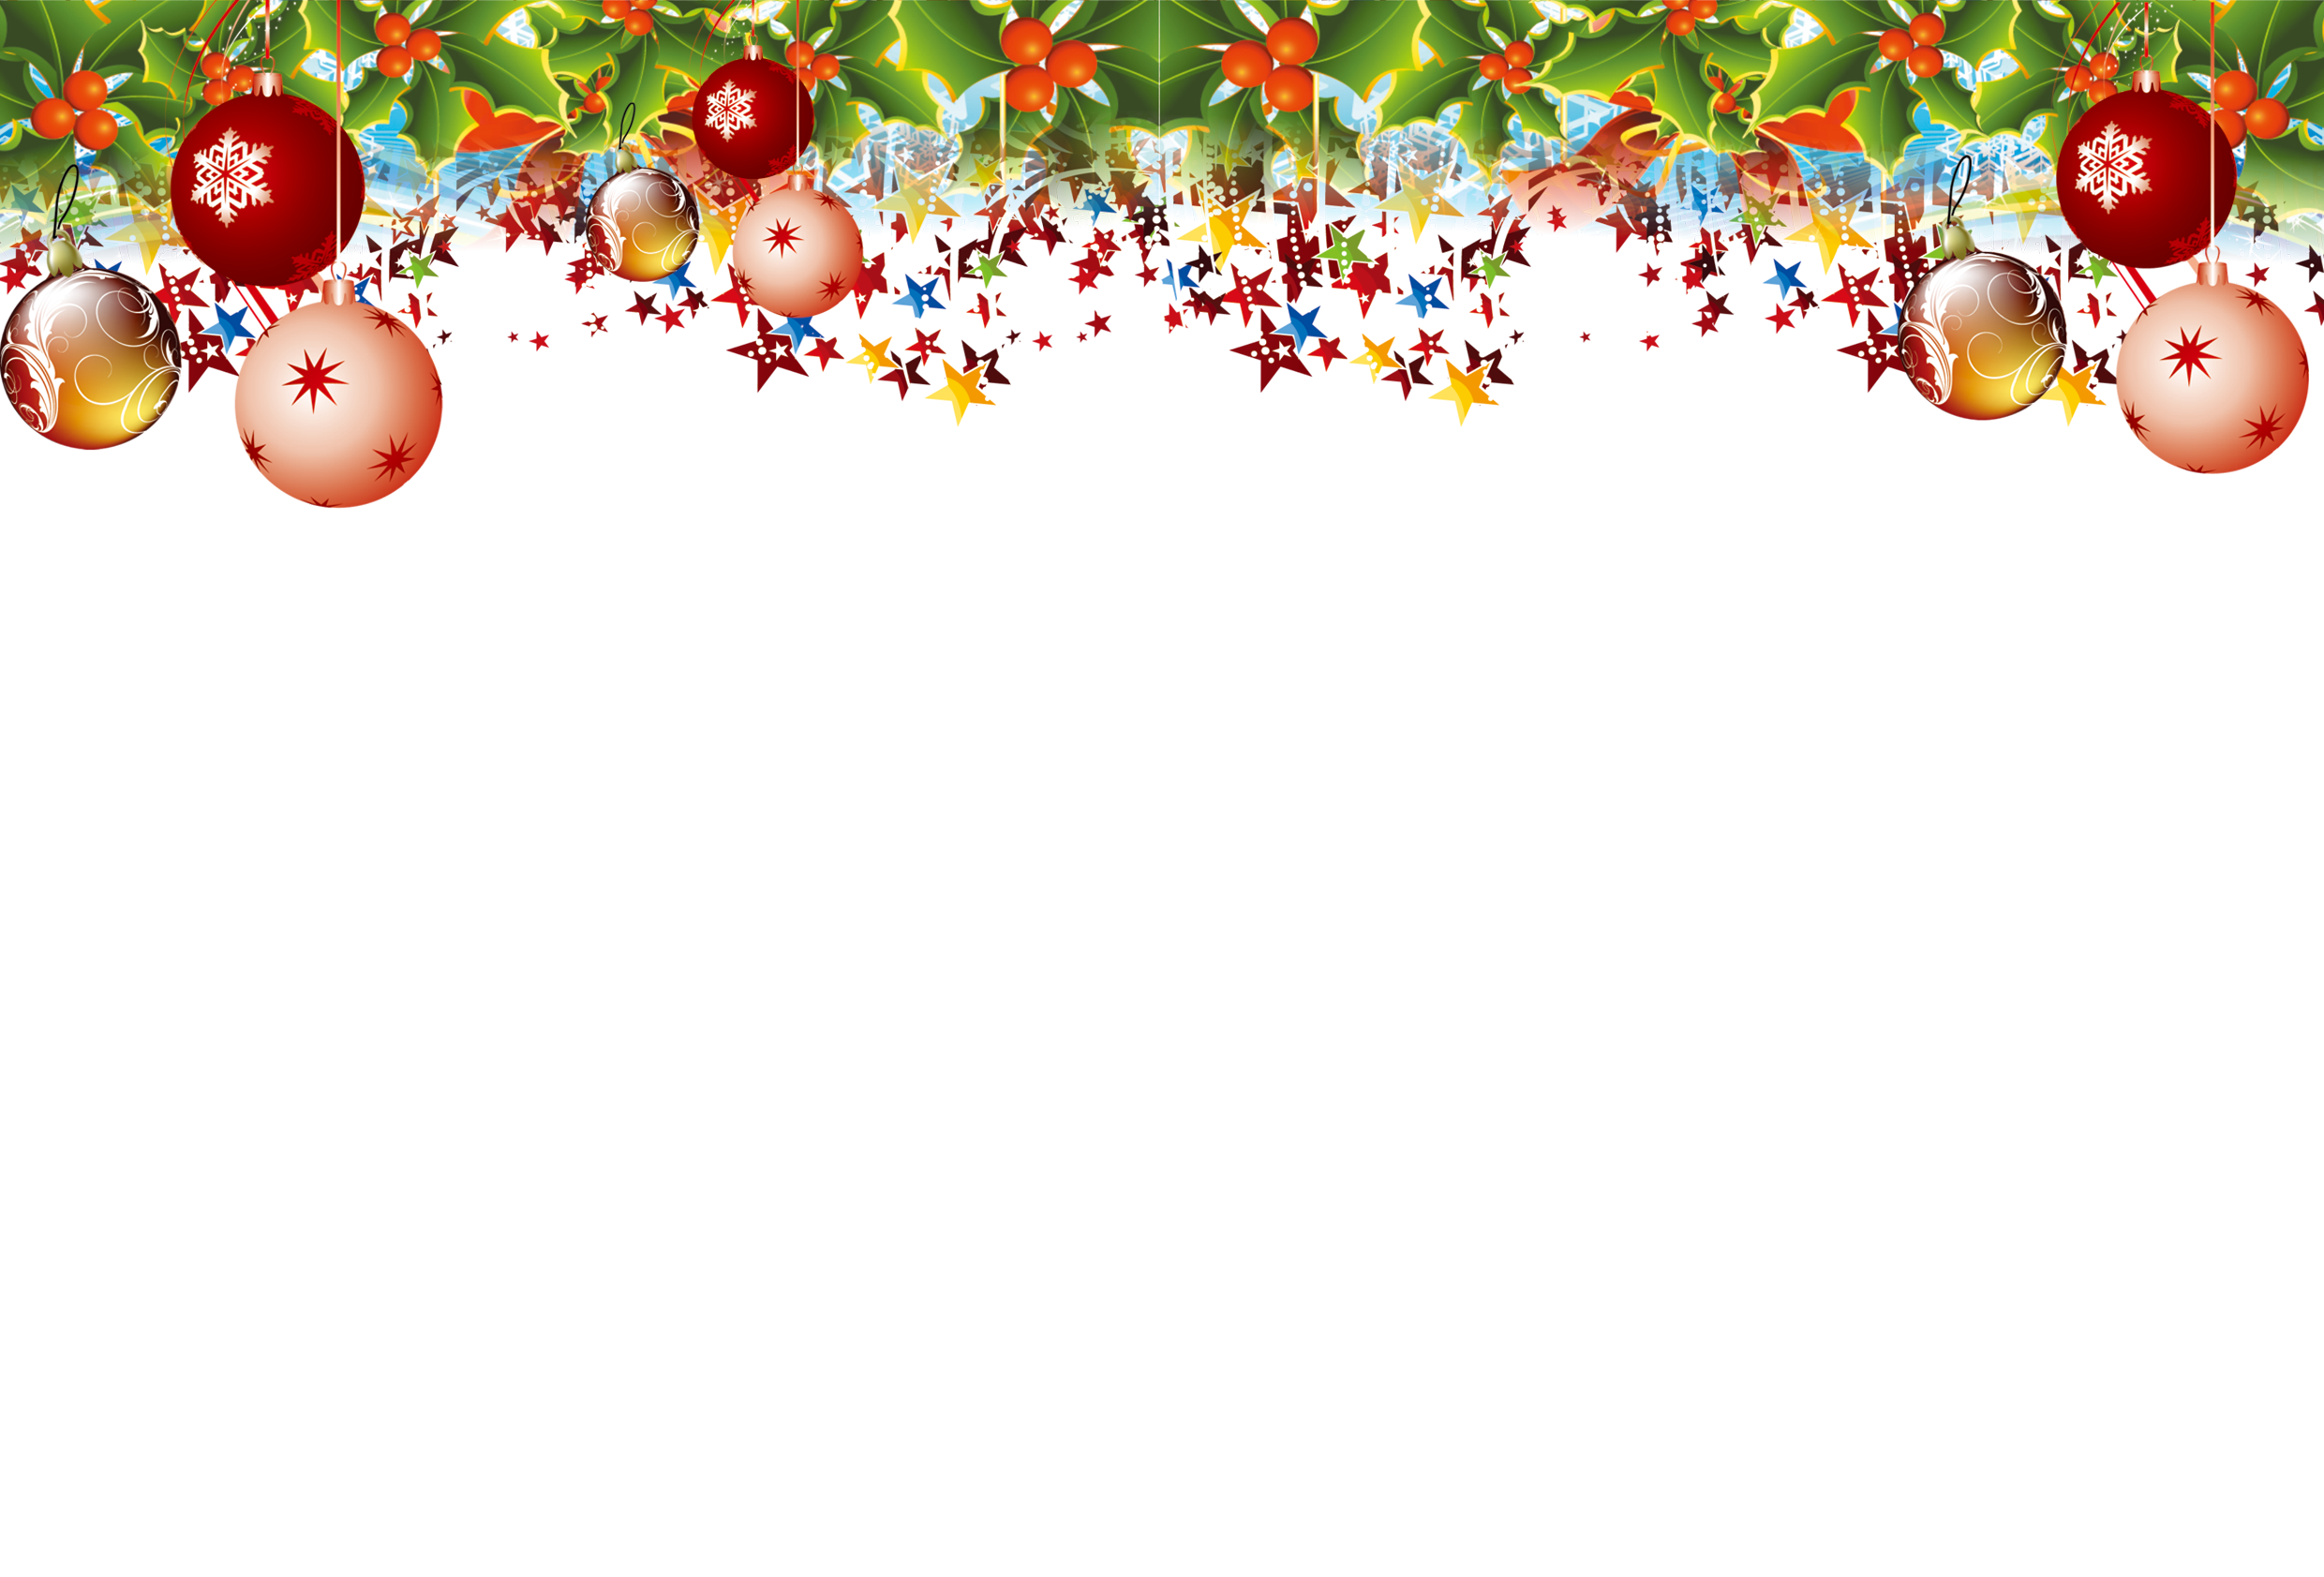 Thêm những hình ảnh PNG Giáng Sinh đơn giản vào thiết kế của bạn và tạo ra một không gian trang trí đầy màu sắc và vui tươi. Các hình ảnh đơn giản nhưng sang trọng giúp tôn lên vẻ đẹp của mỗi sản phẩm và tạo sự chuyên nghiệp cho mỗi thiết kế.